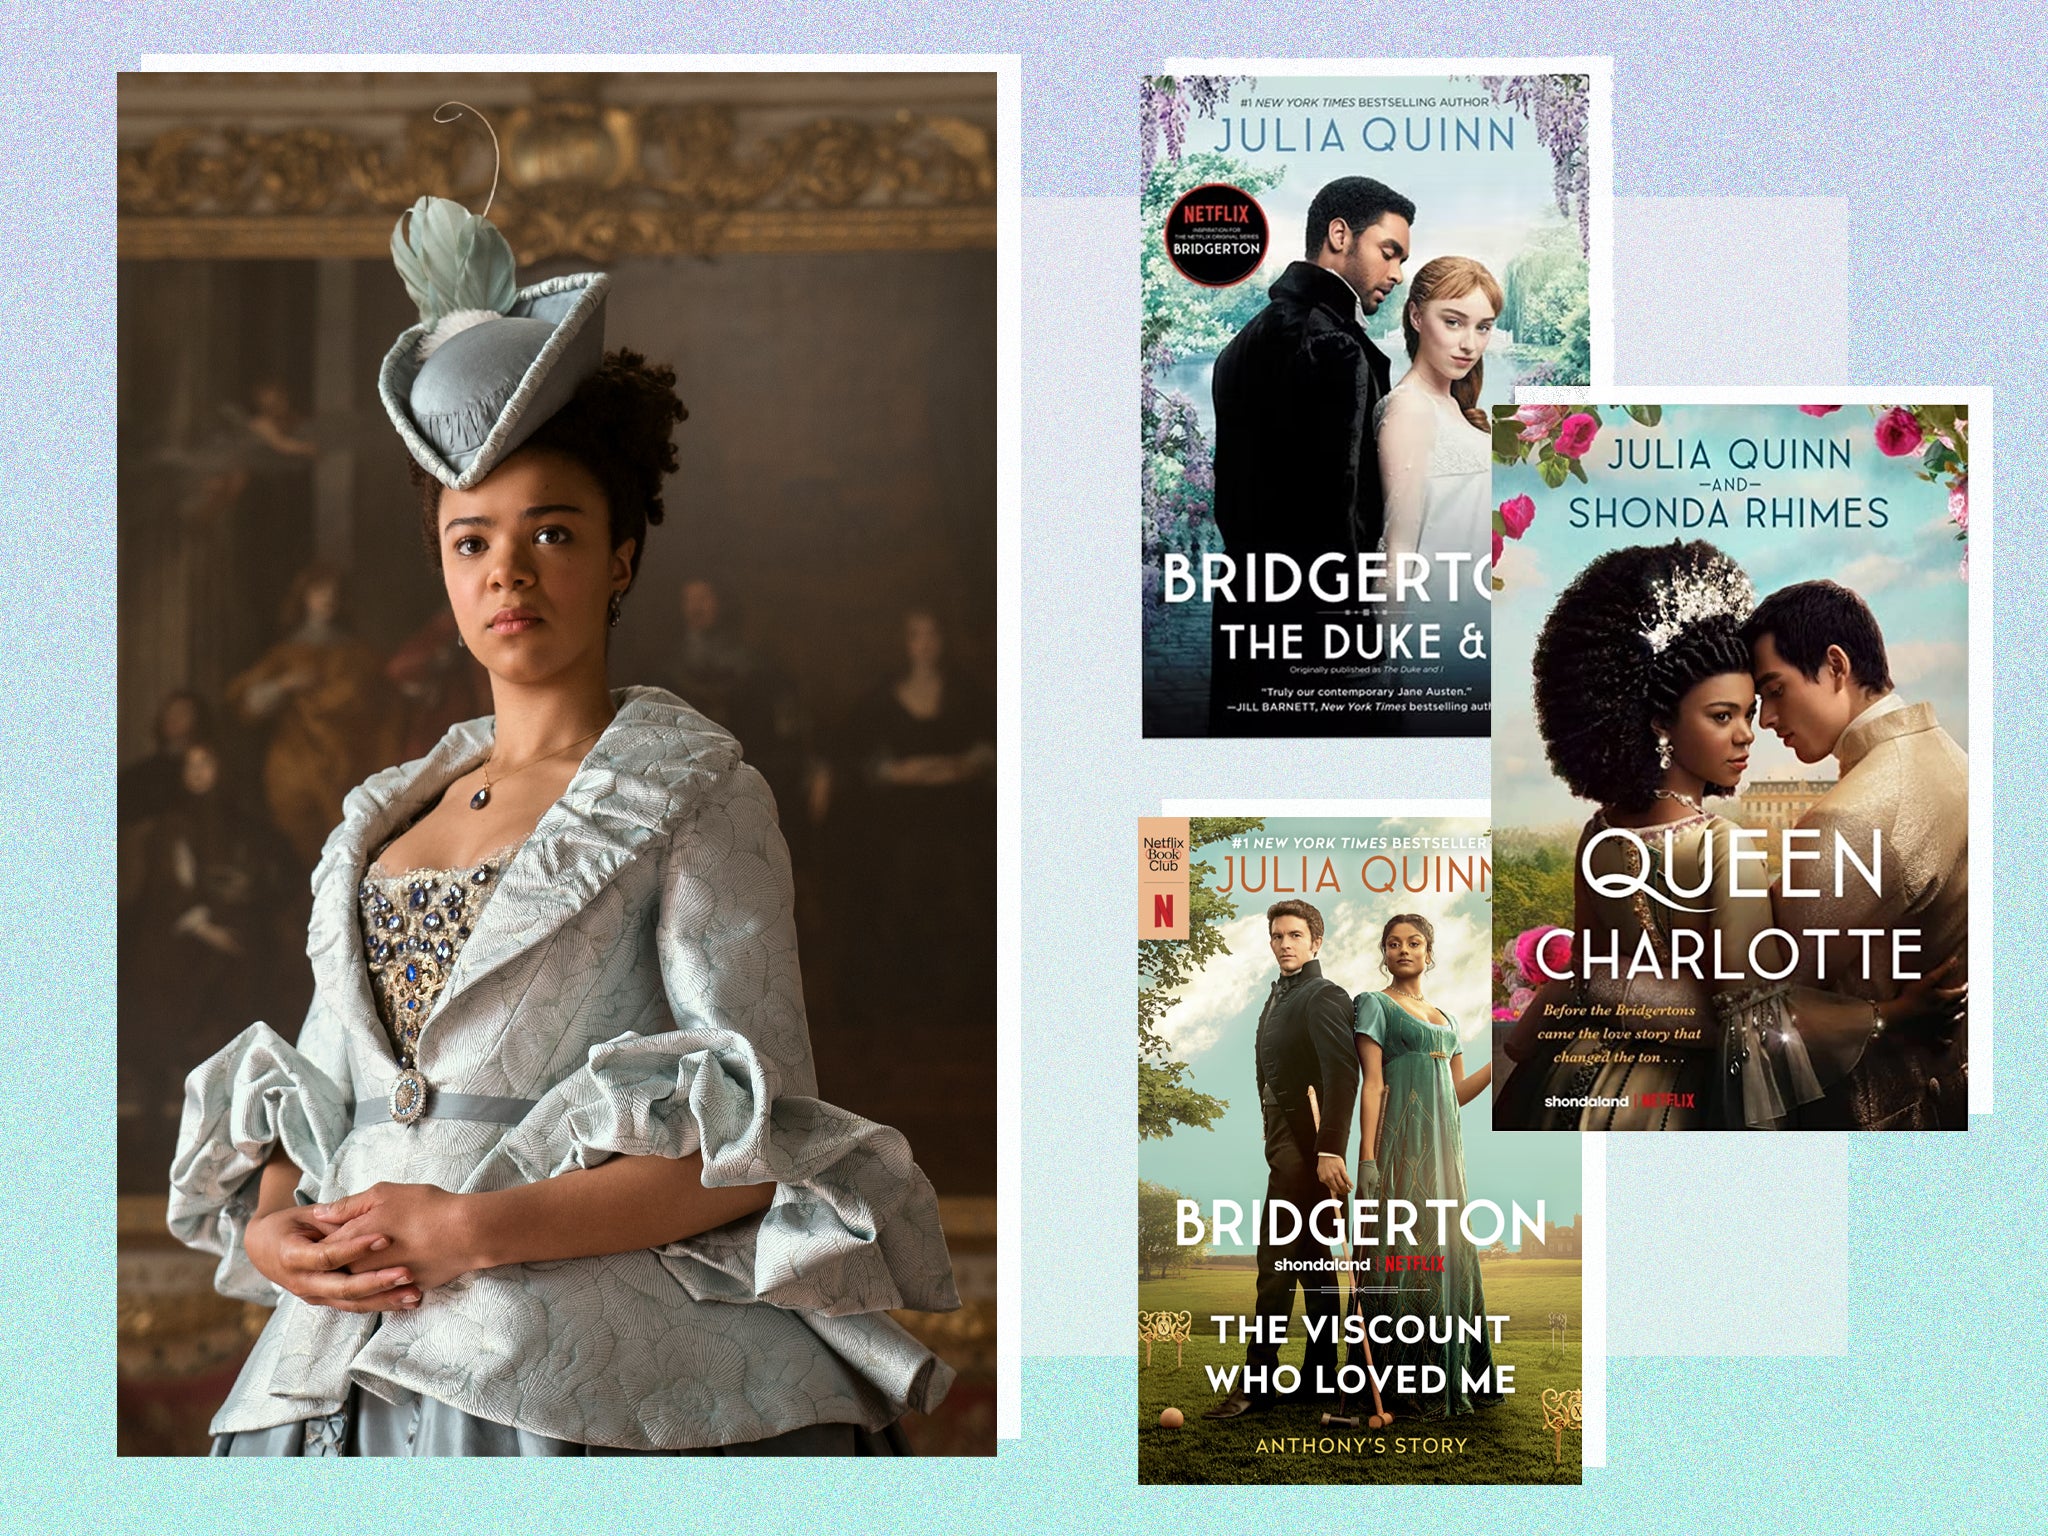 Queen Charlotte by Julia Quinn & Shonda Rhimes – HarperCollins